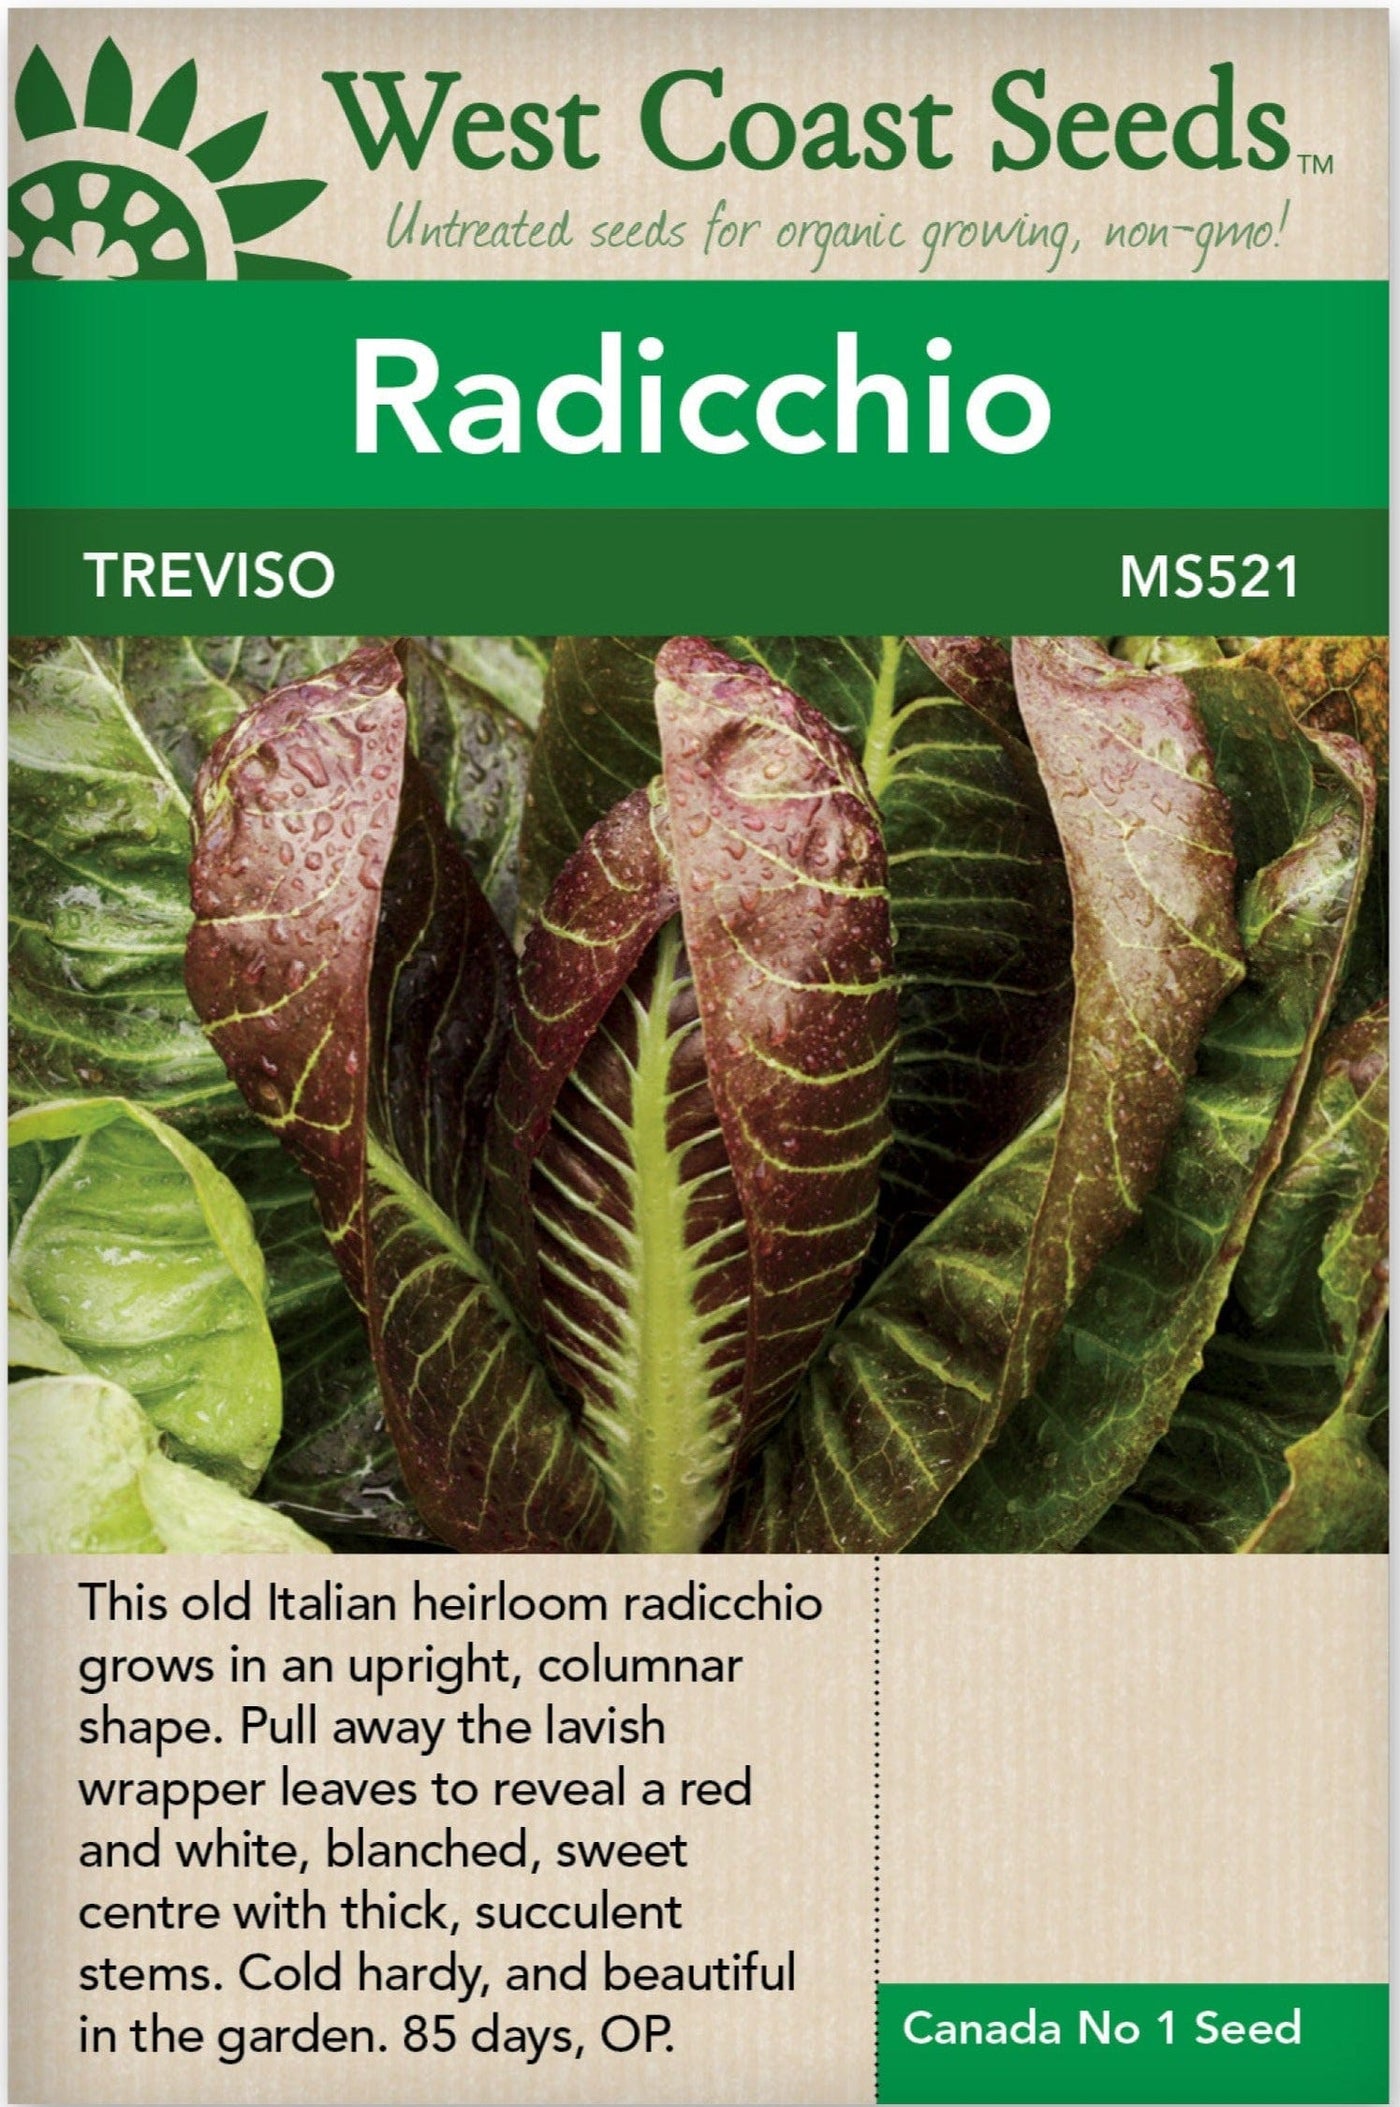 Radicchio di Treviso - West Coast Seeds